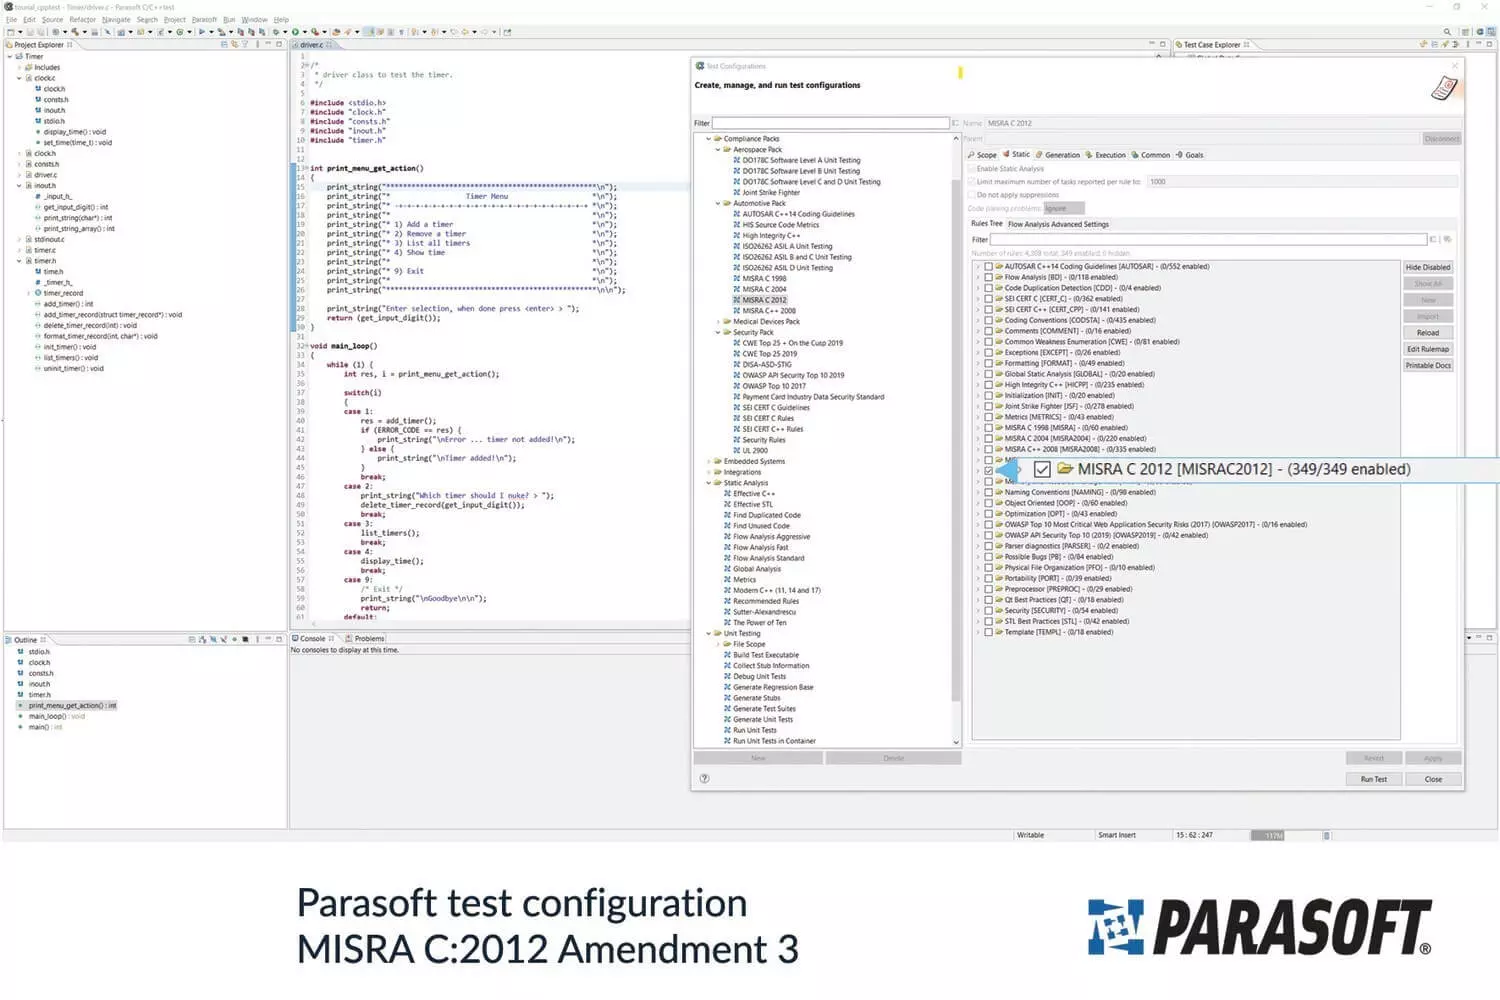 Parasoft支持更新MISRA C:2012，提供最新的安全和合规编码指南